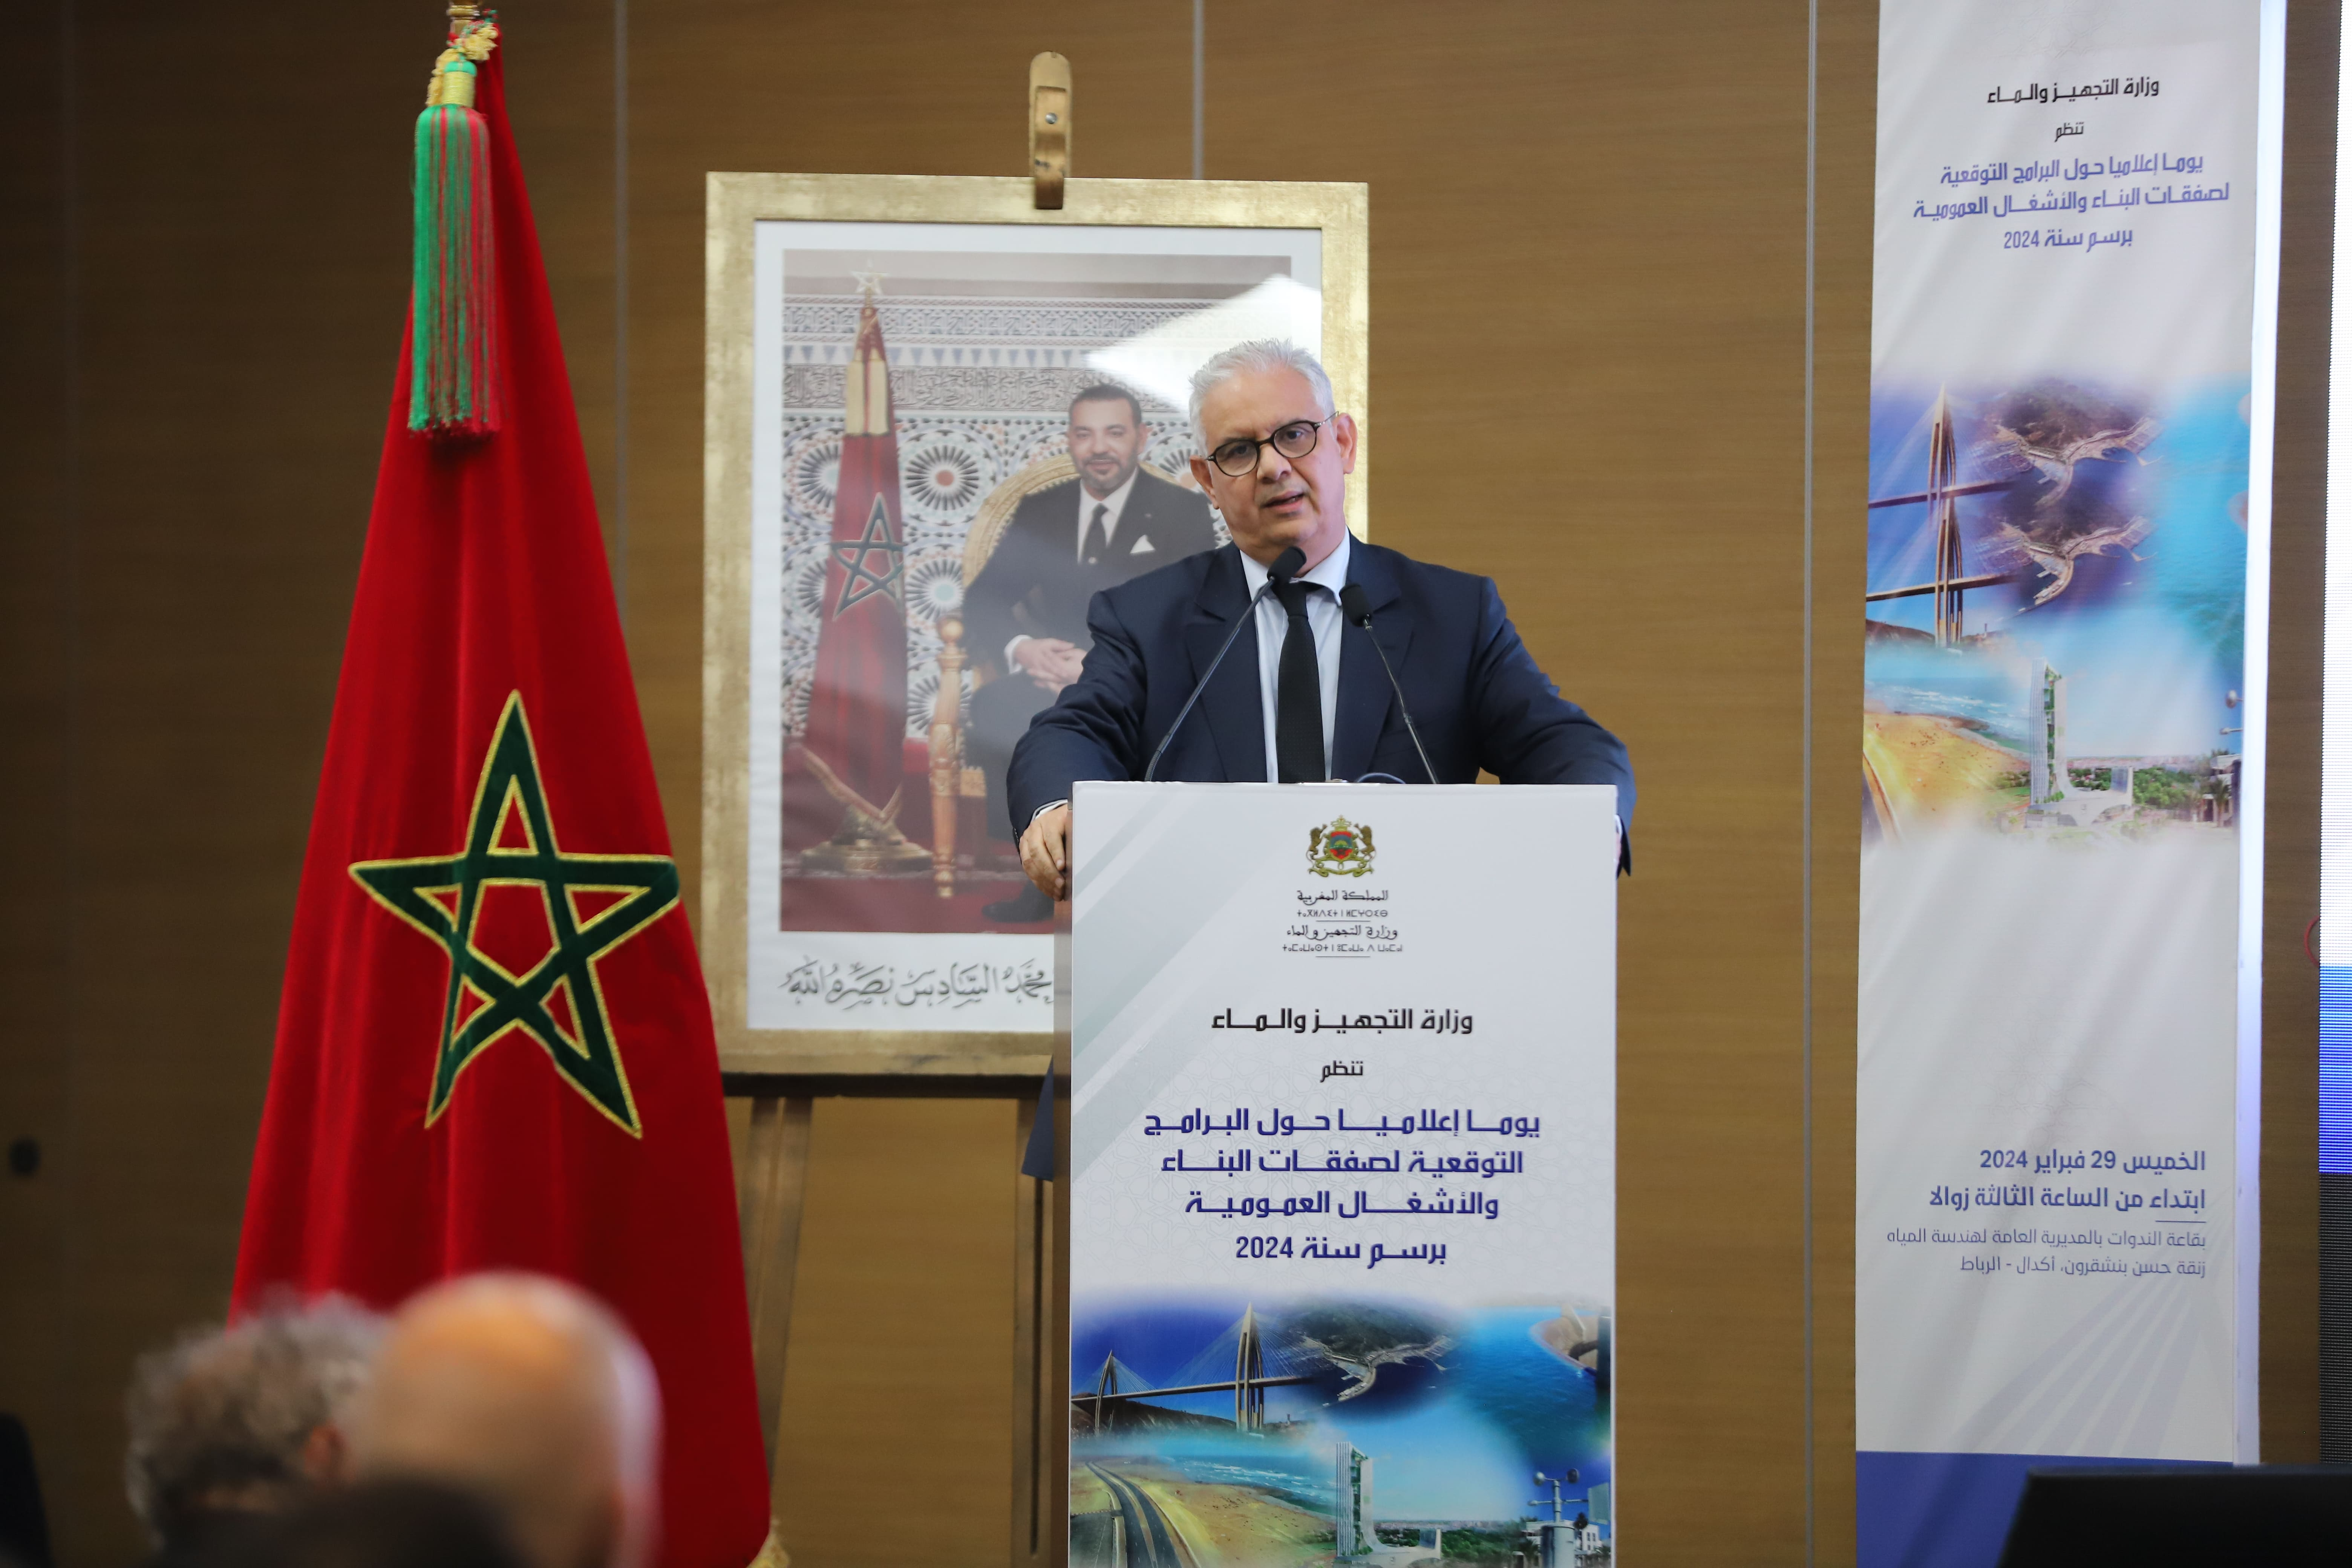 قفزة استثمارية ملحوظة: المغرب يعزز البنية التحتية ويفتح آفاقًا جديدة في قطاع البناء والأشغال العمومية